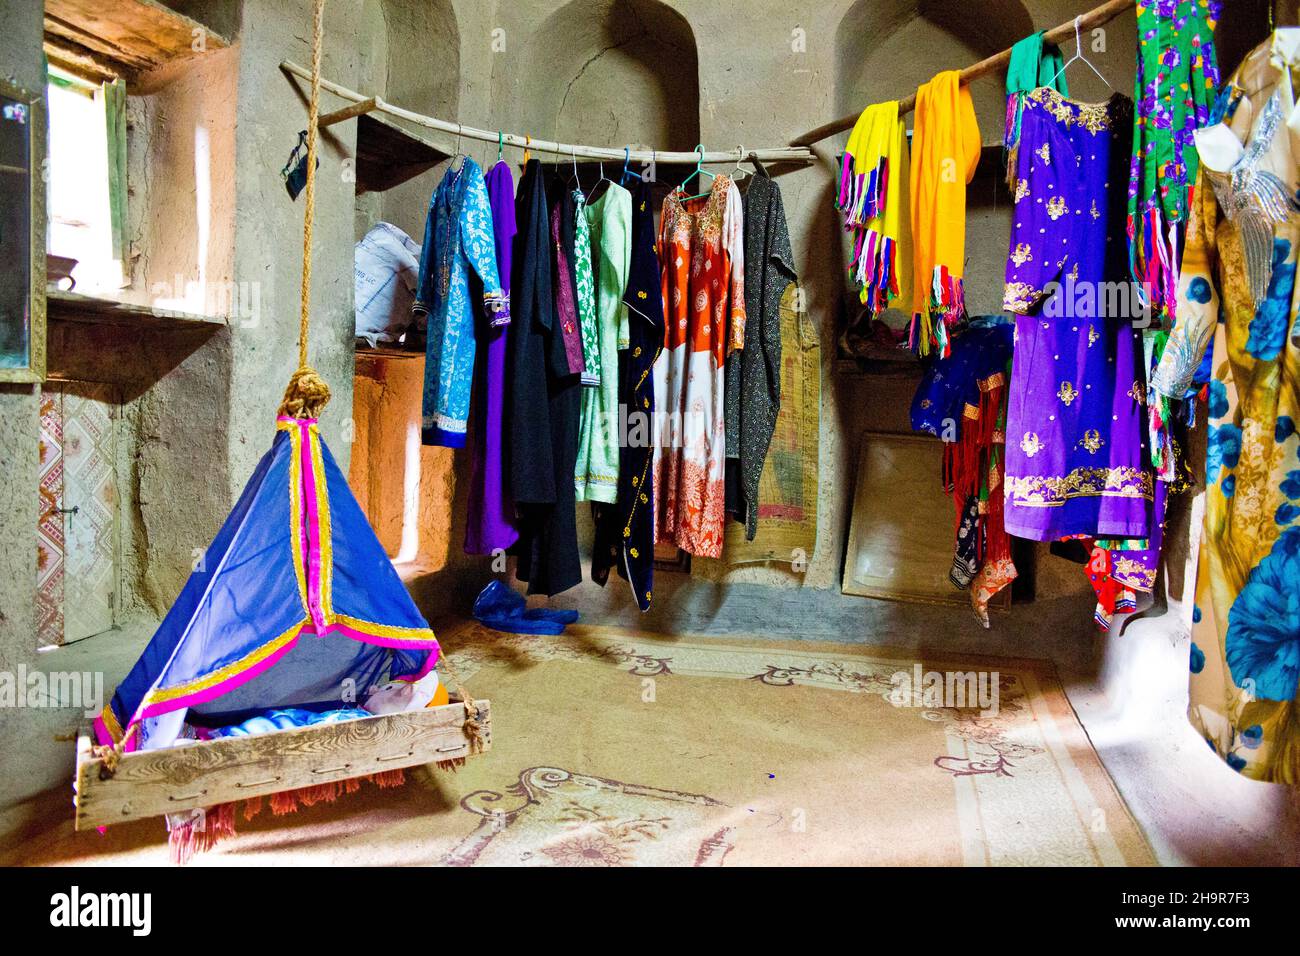 Carril de ropa y cuna, casa tradicional, Museo Bait al Safah de Historia Local, antiguo asentamiento de barro Al Hamra, Al Hamra, Omán Foto de stock